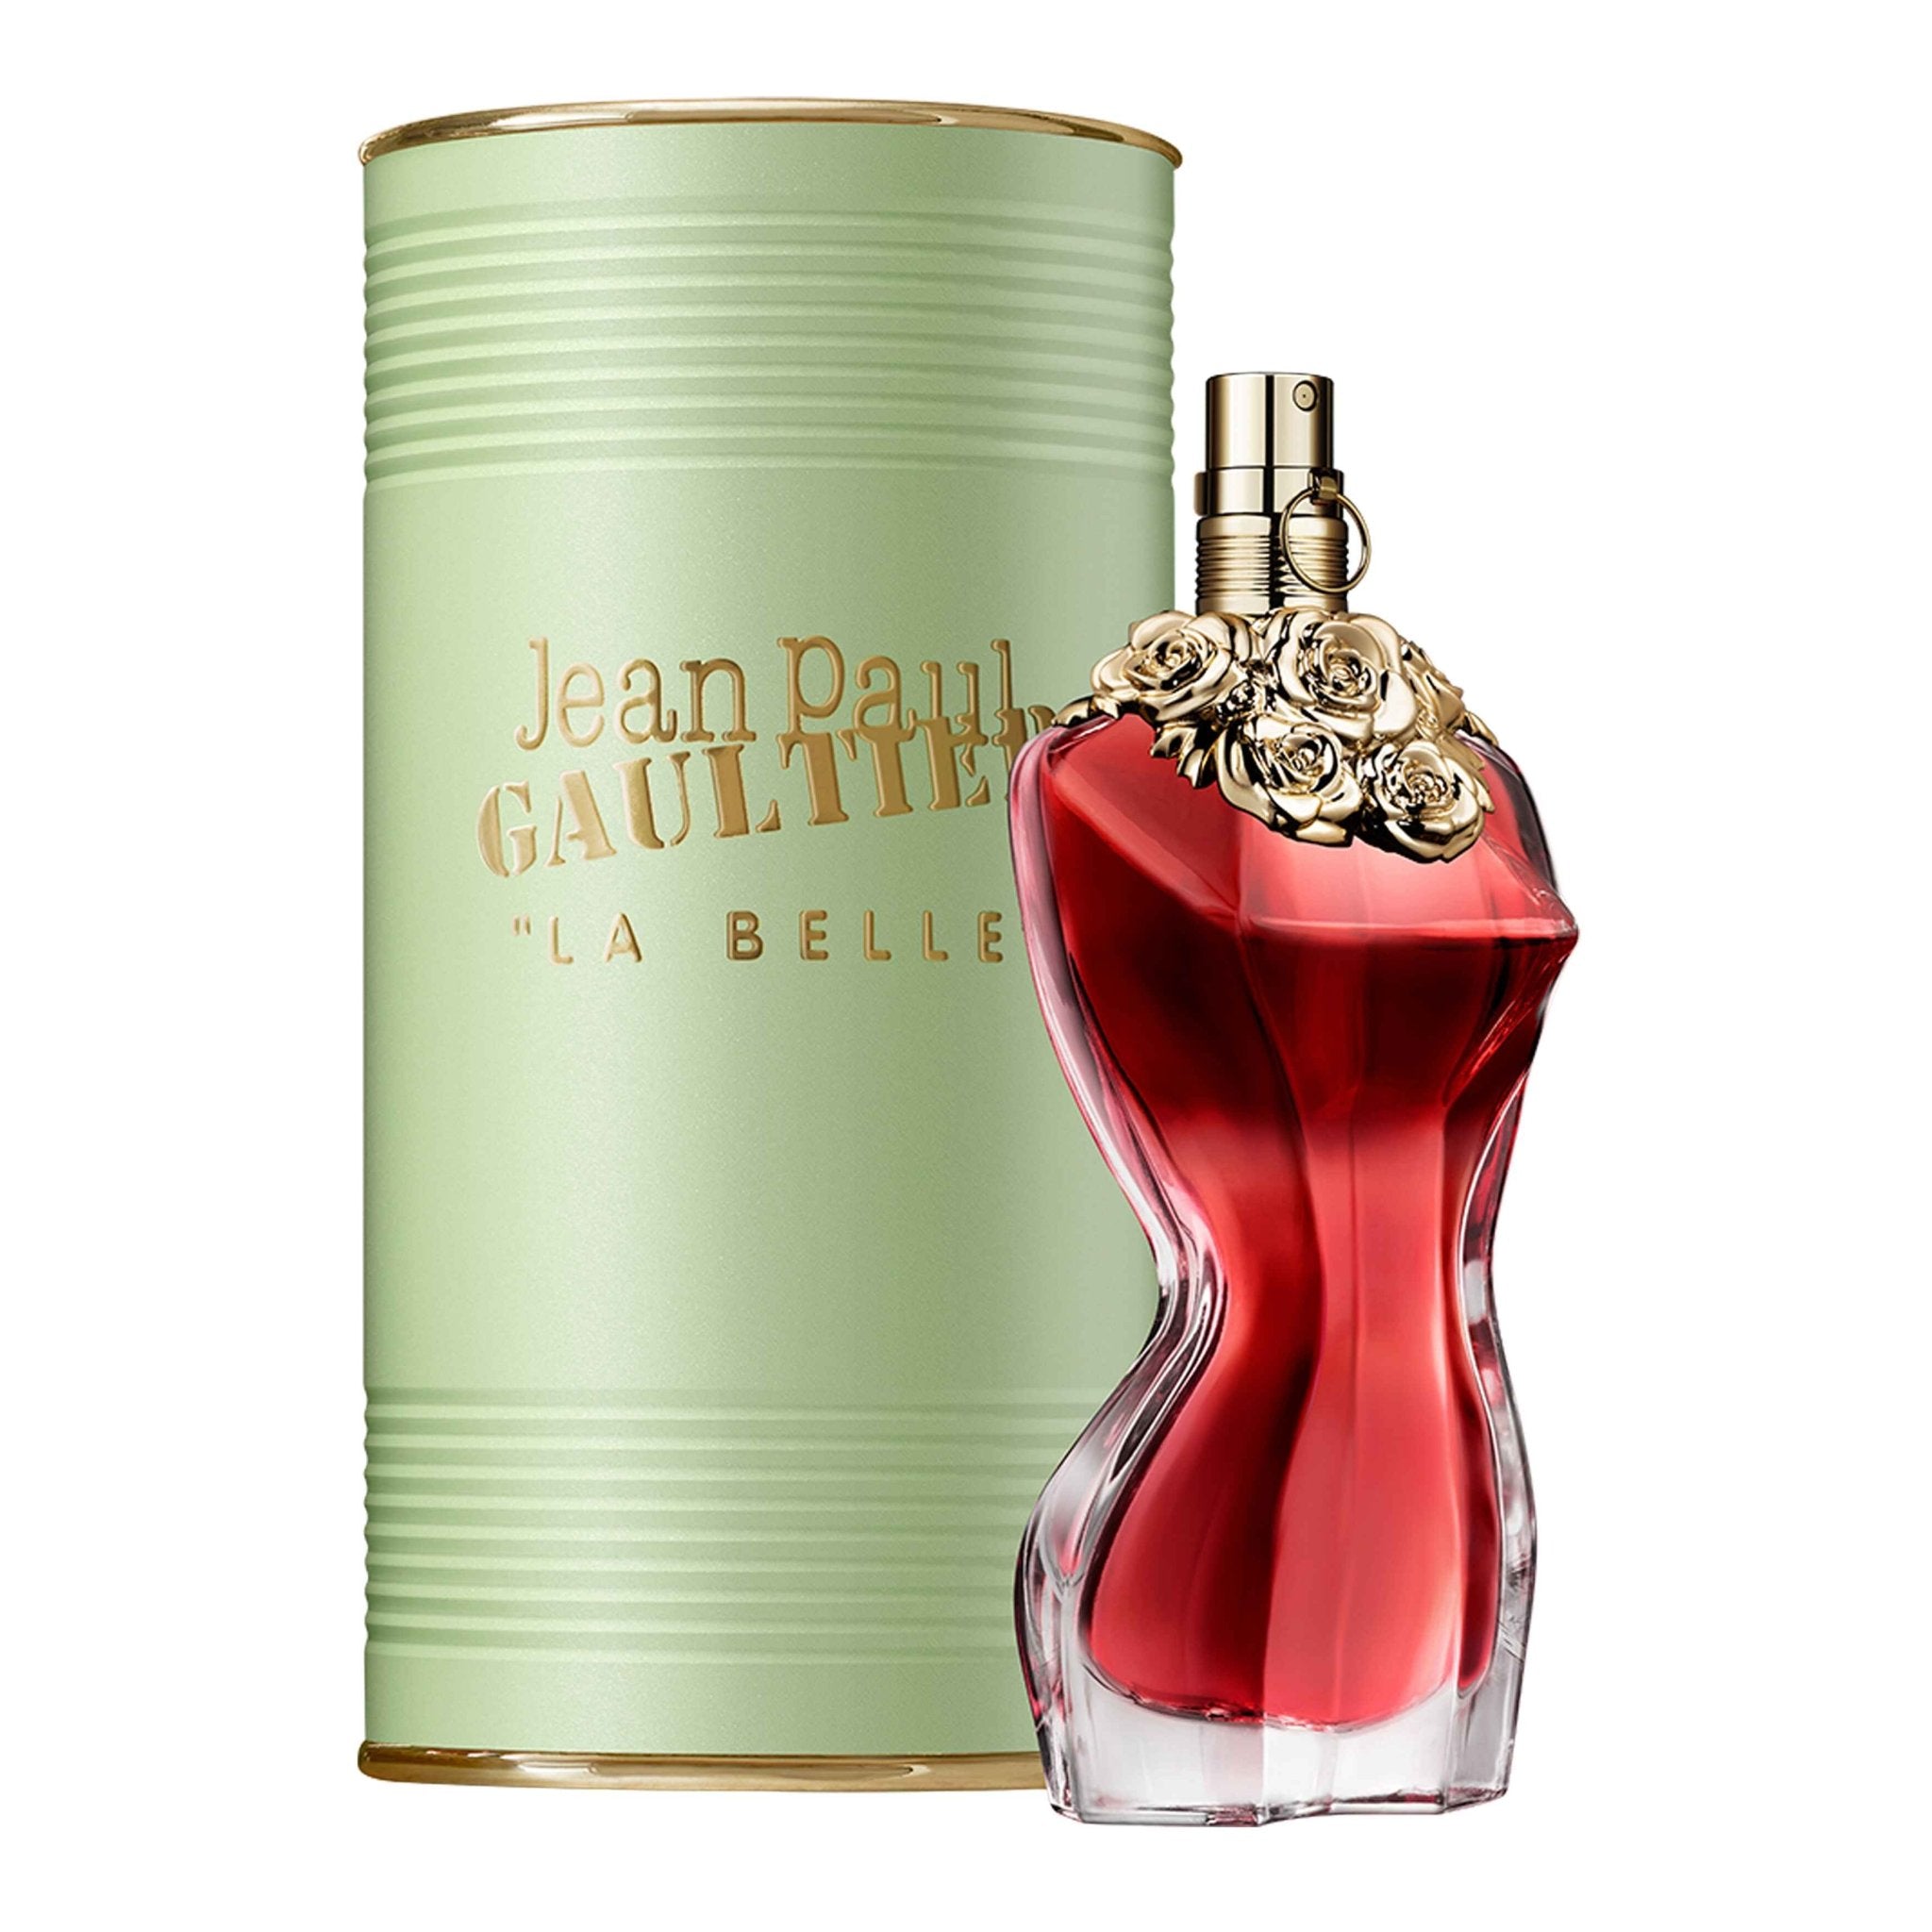 Jean Paul Gaultier La Belle For Women Eau De Parfum 100ml - AllurebeautypkJean Paul Gaultier La Belle For Women Eau De Parfum 100ml